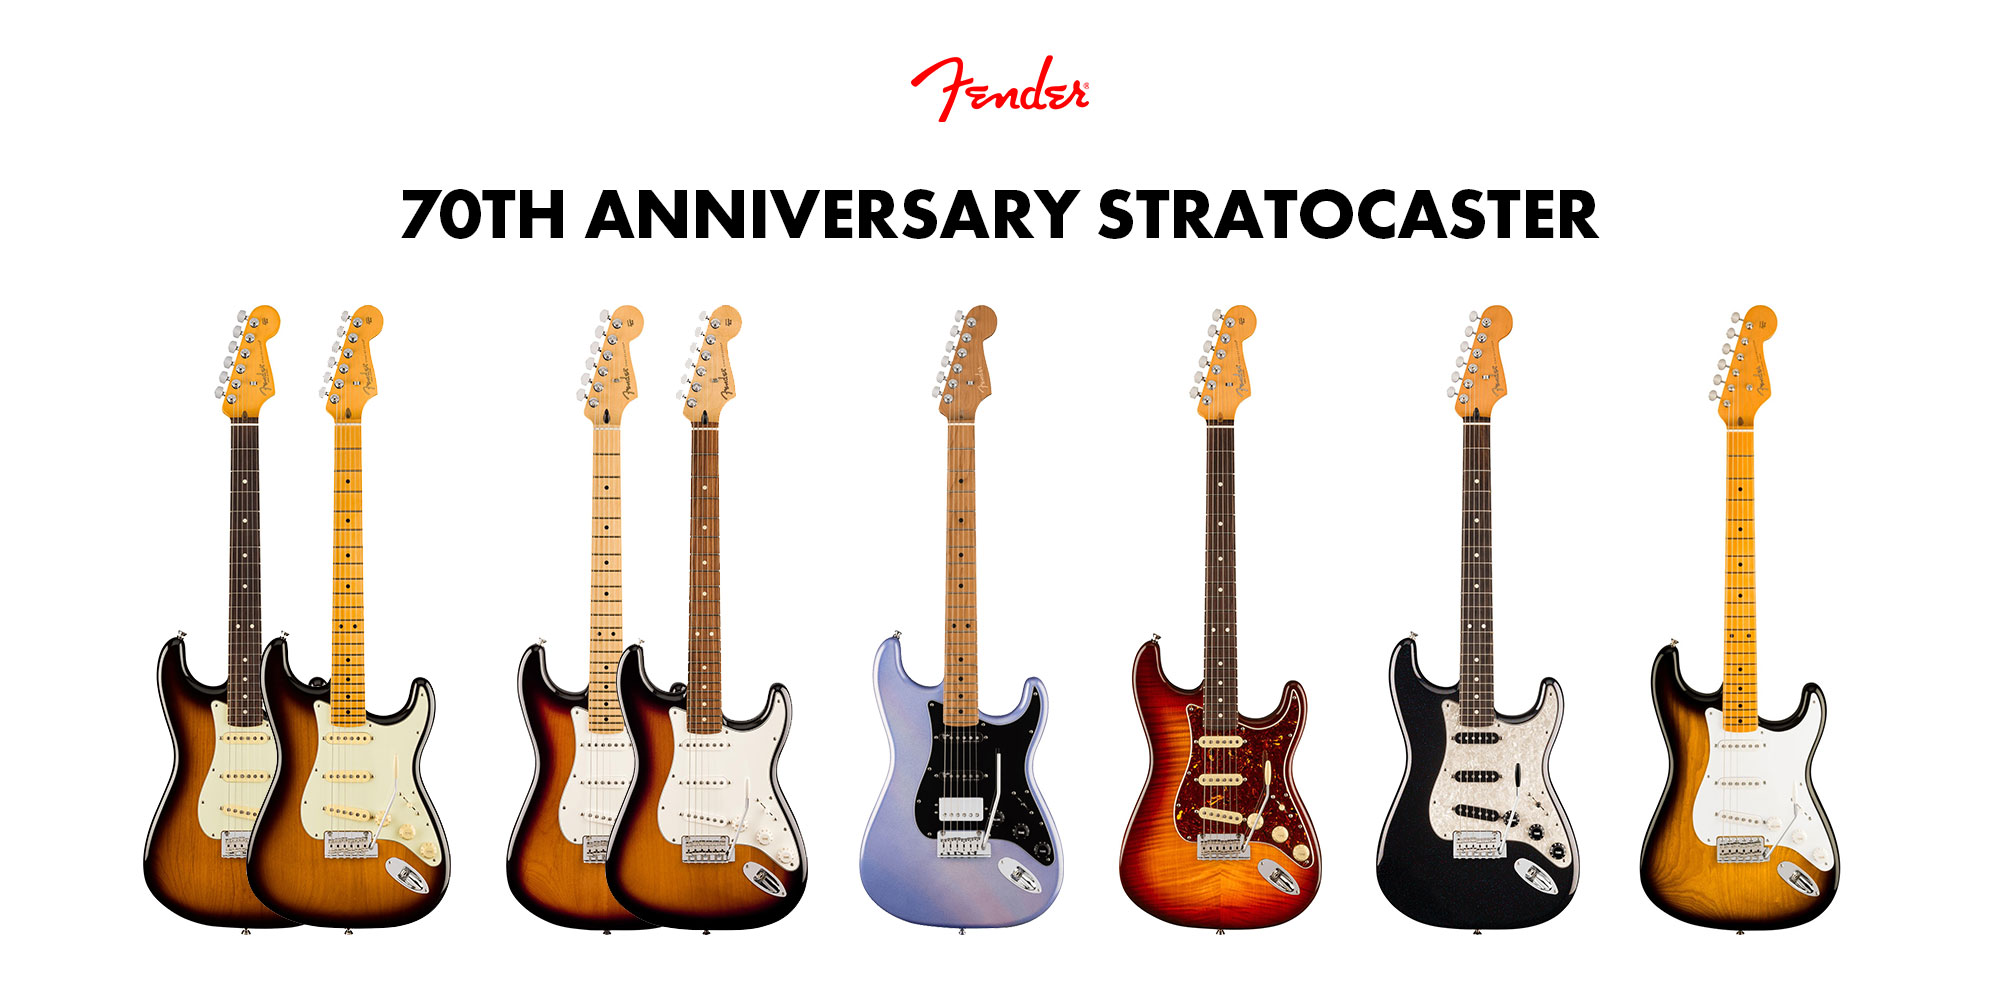 Fender 70th Anniversary Stratocaster - ストラトキャスター生誕70周年を記念したモデル